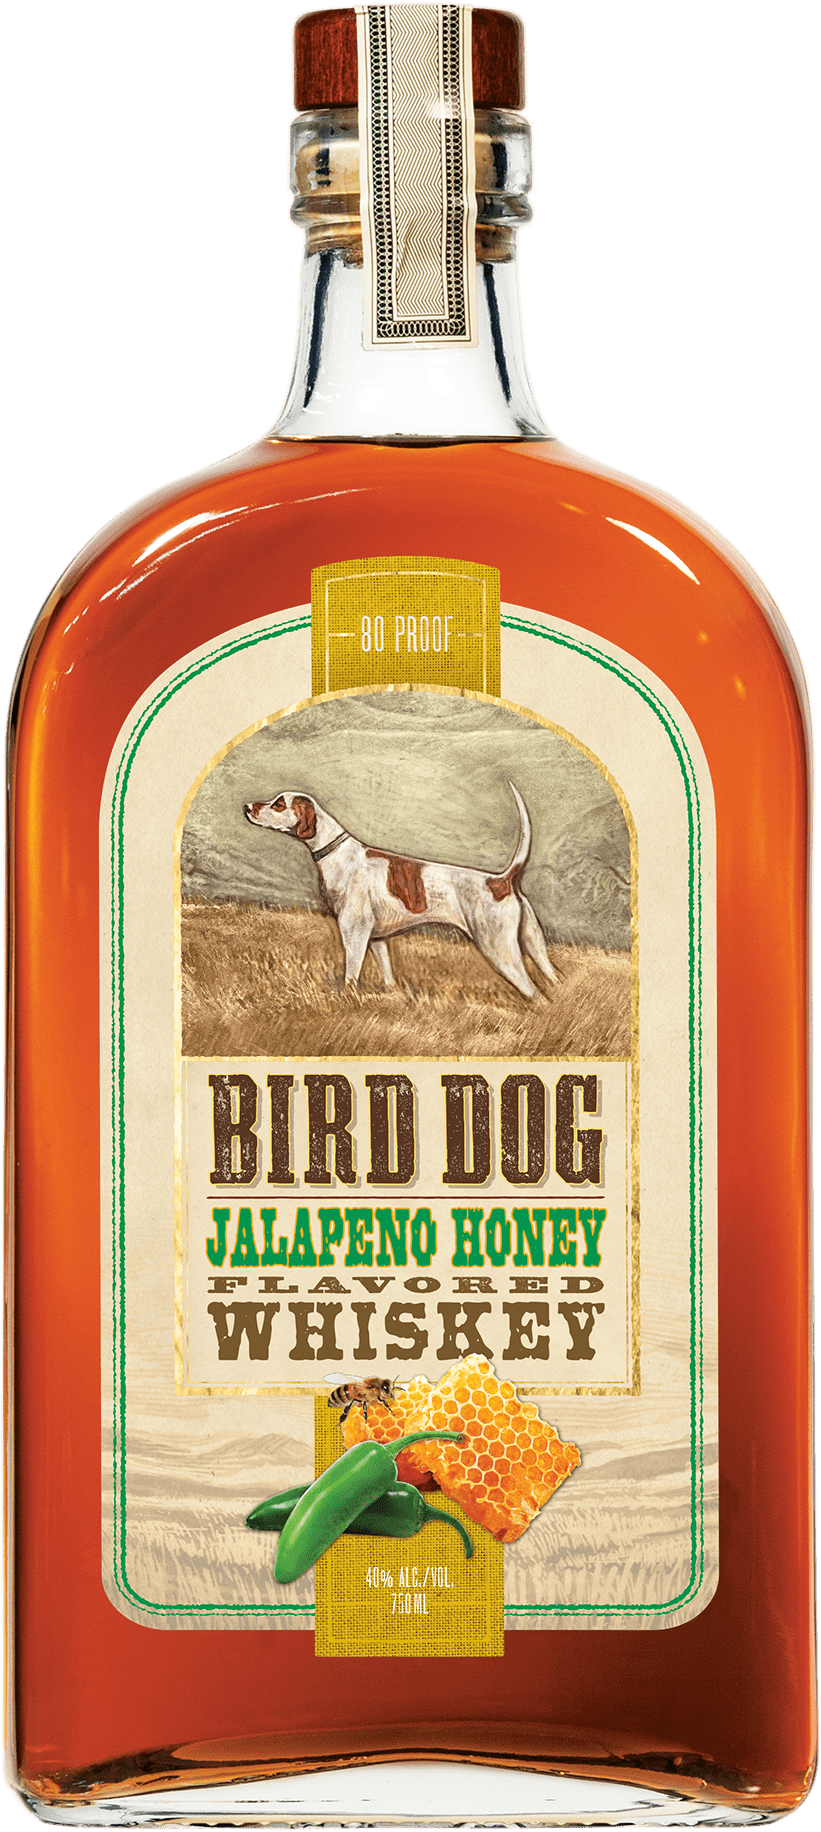 Bottle of Bird Dog Jalapeño Honey Whiskey